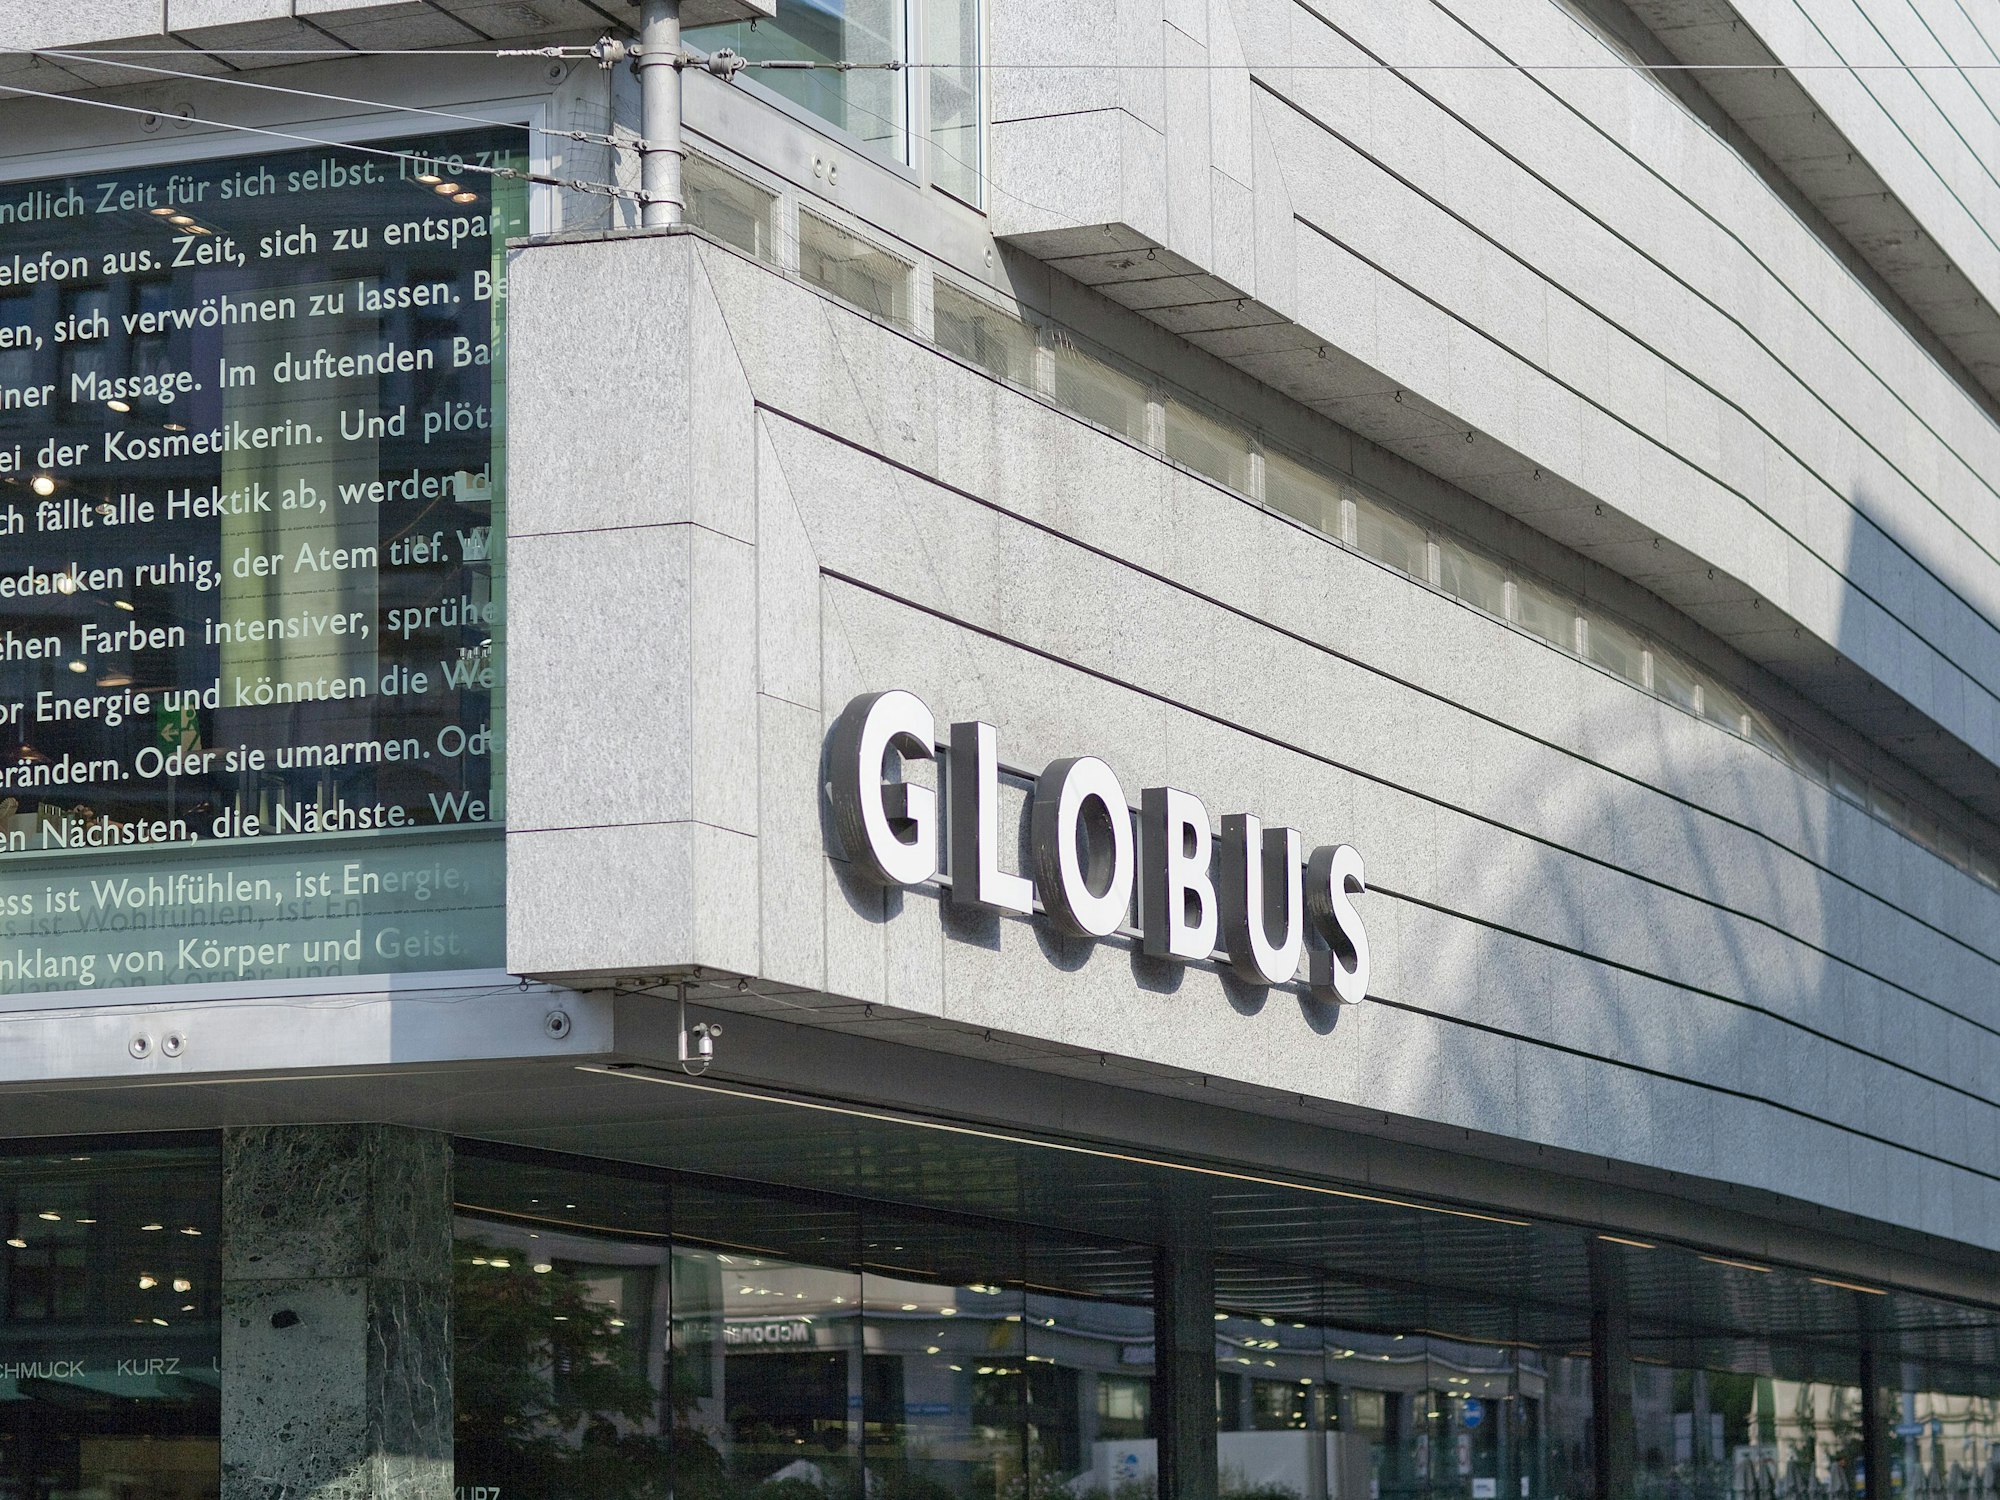 Die Fassade der Filiale des Einzelhändlers „Globus“, hier im September 2019 in Zürich.